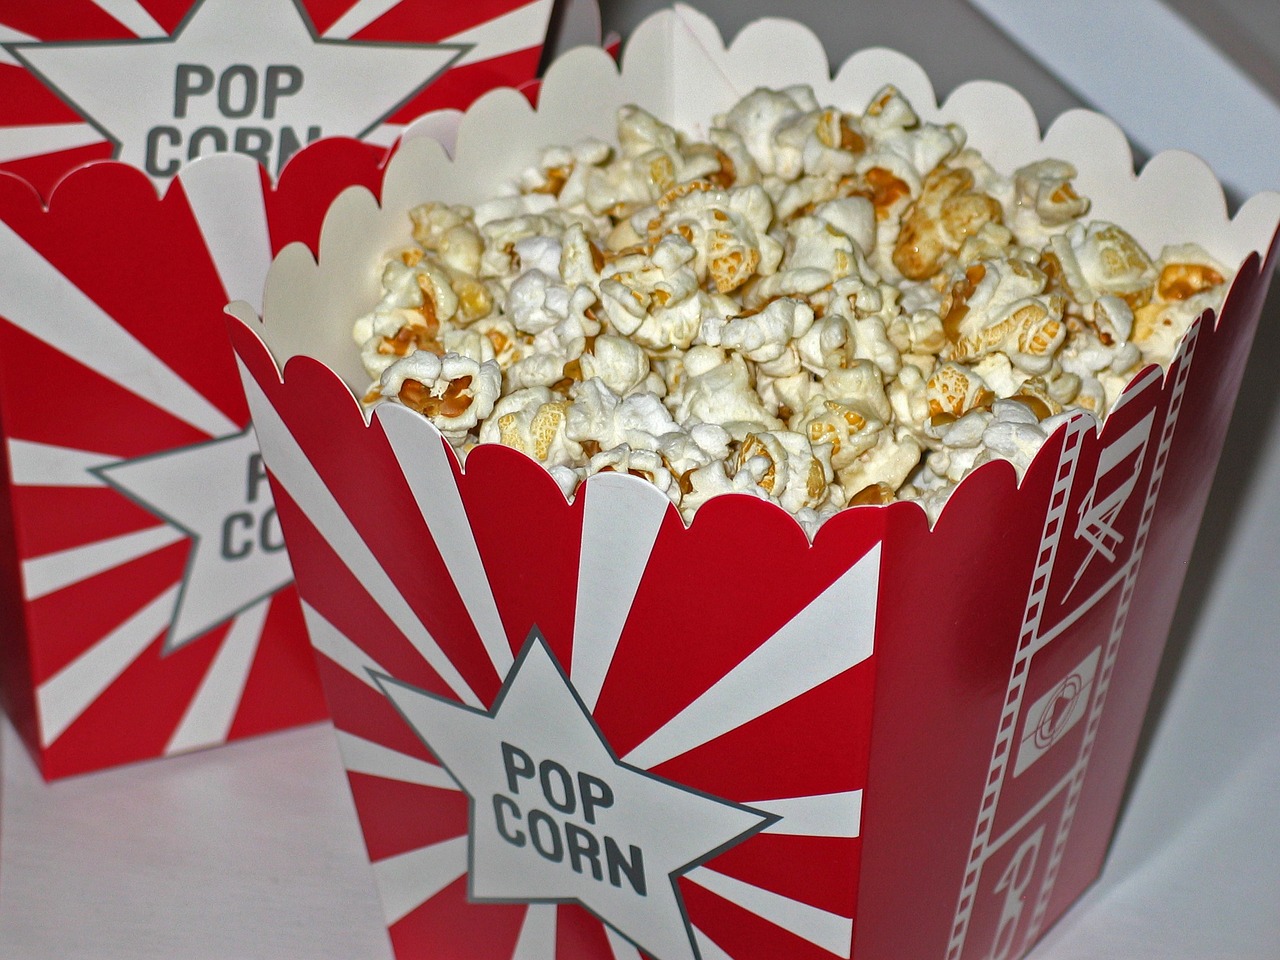 Dlaczego popcorn nie zalicza się do najzdrowszych przekąsek?